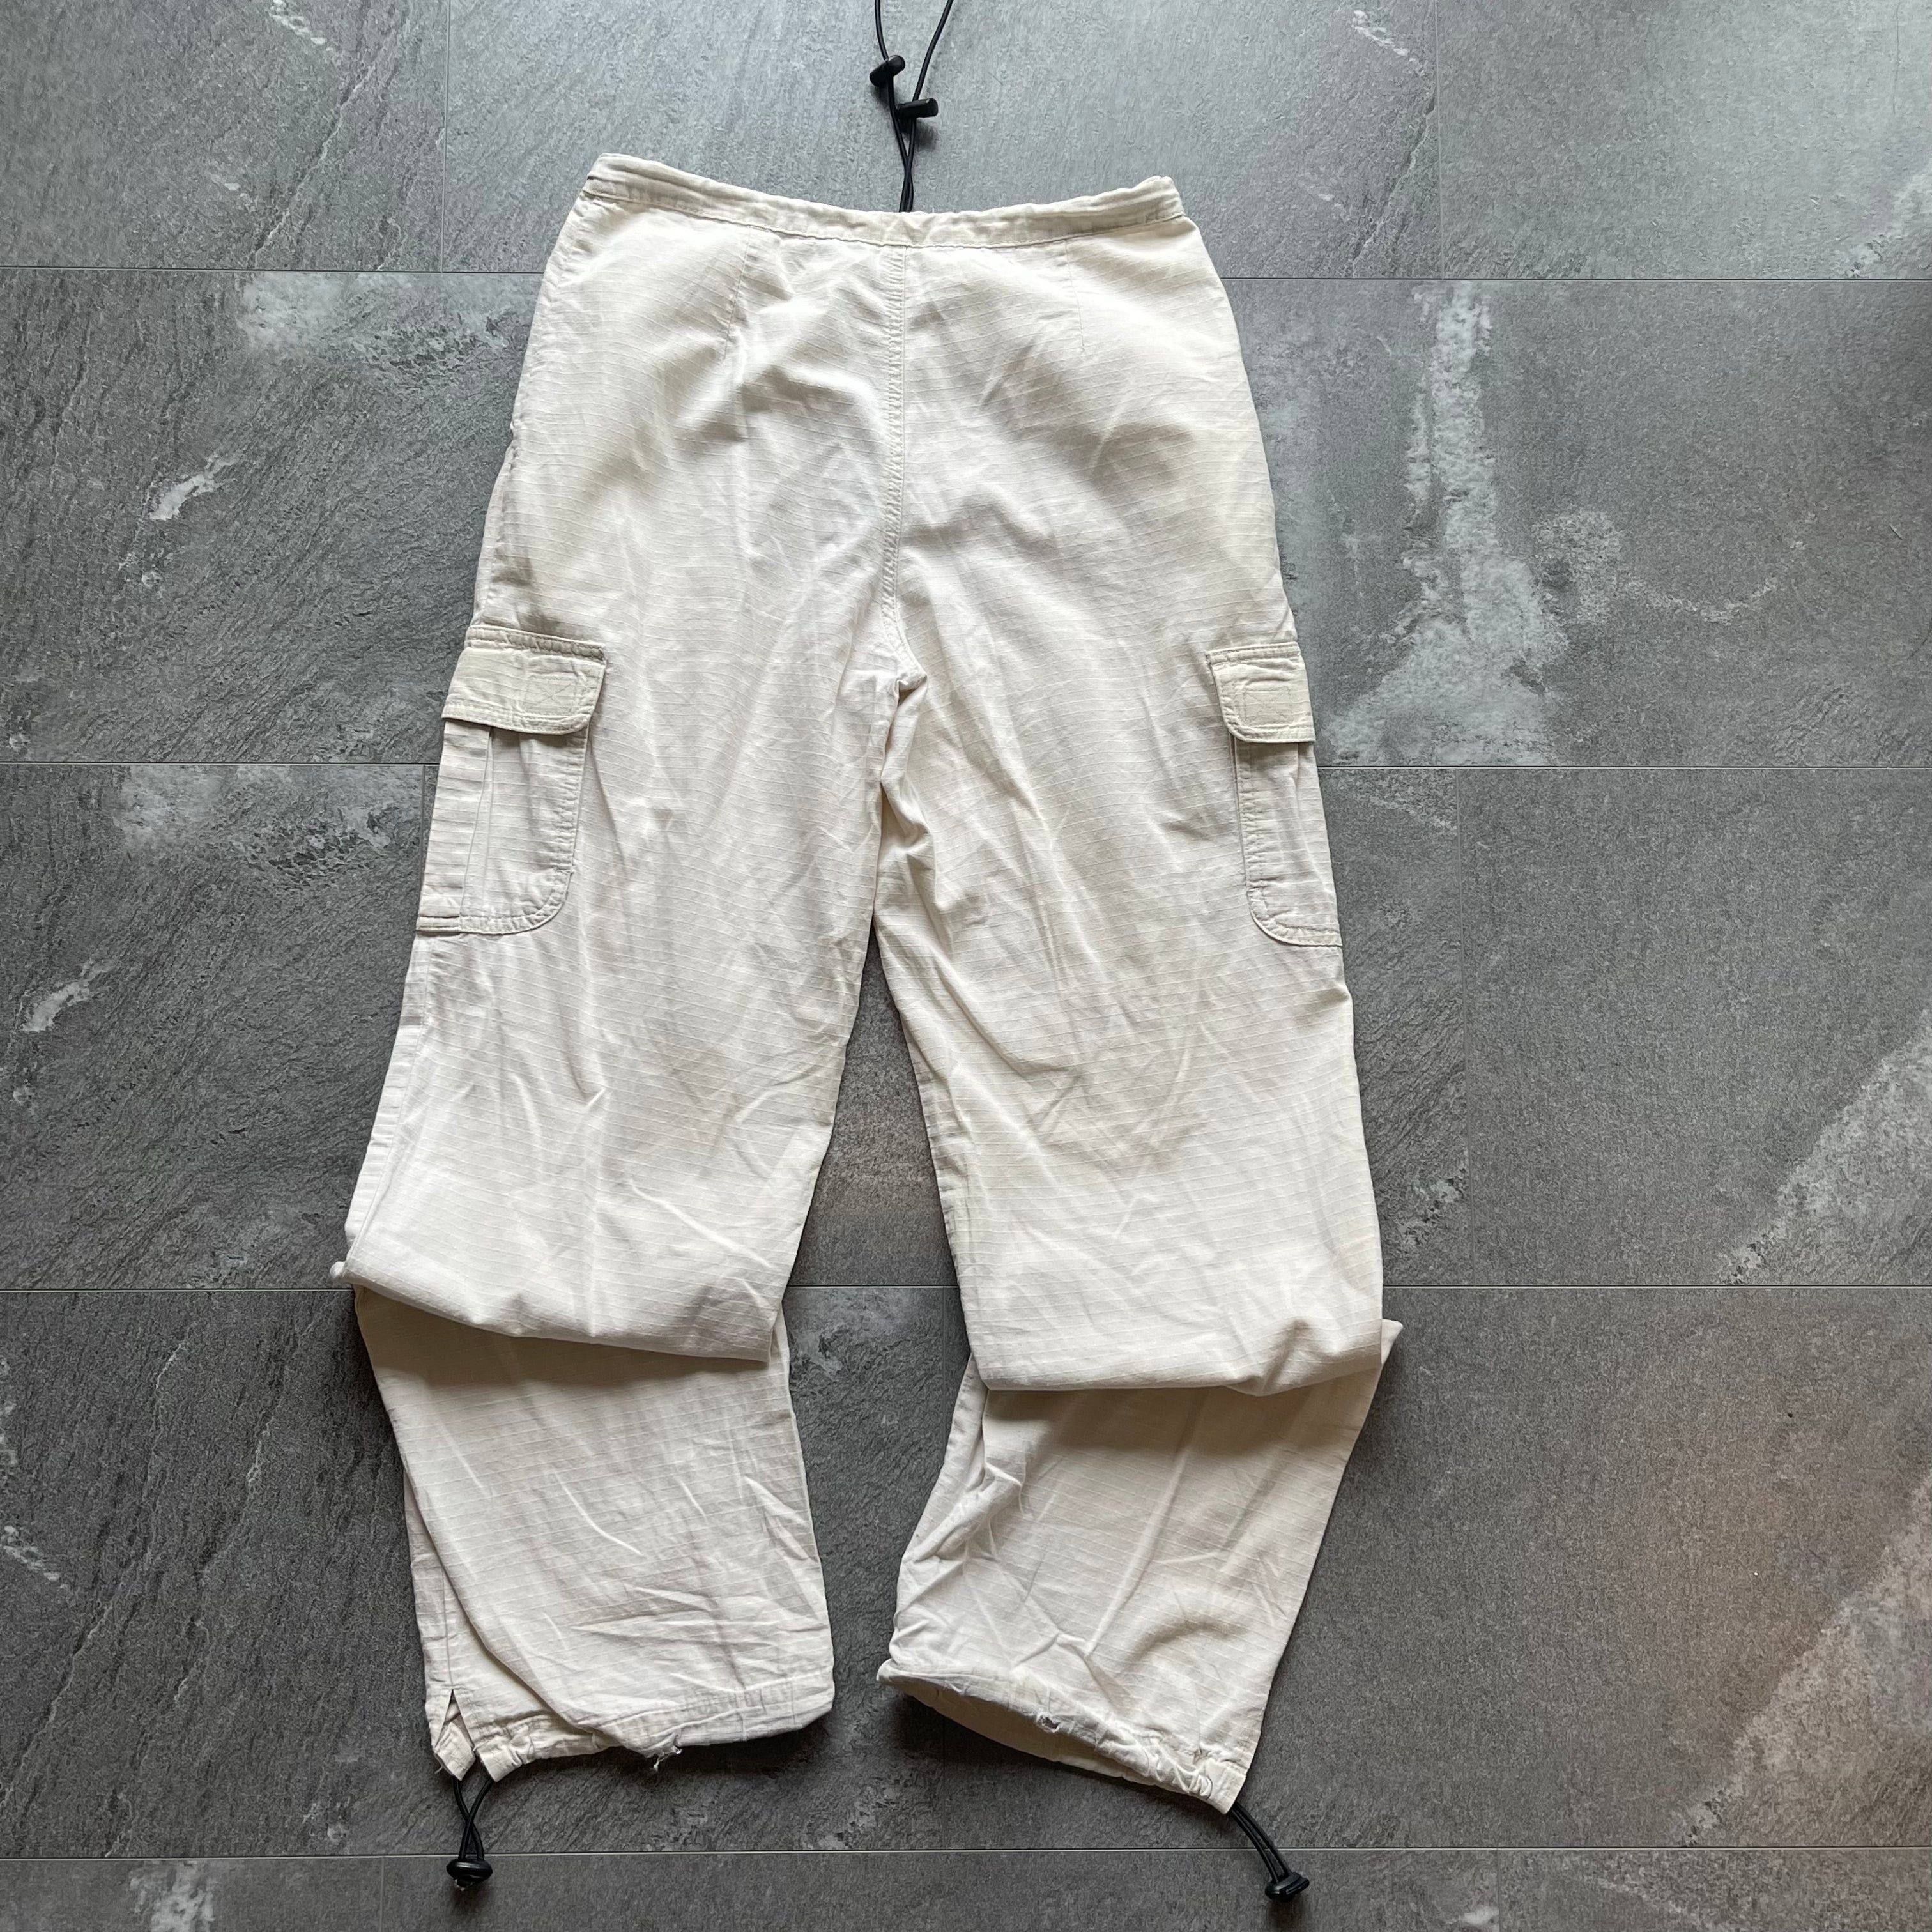 Vintage Point Zero Cargo Pants - Size 30x30